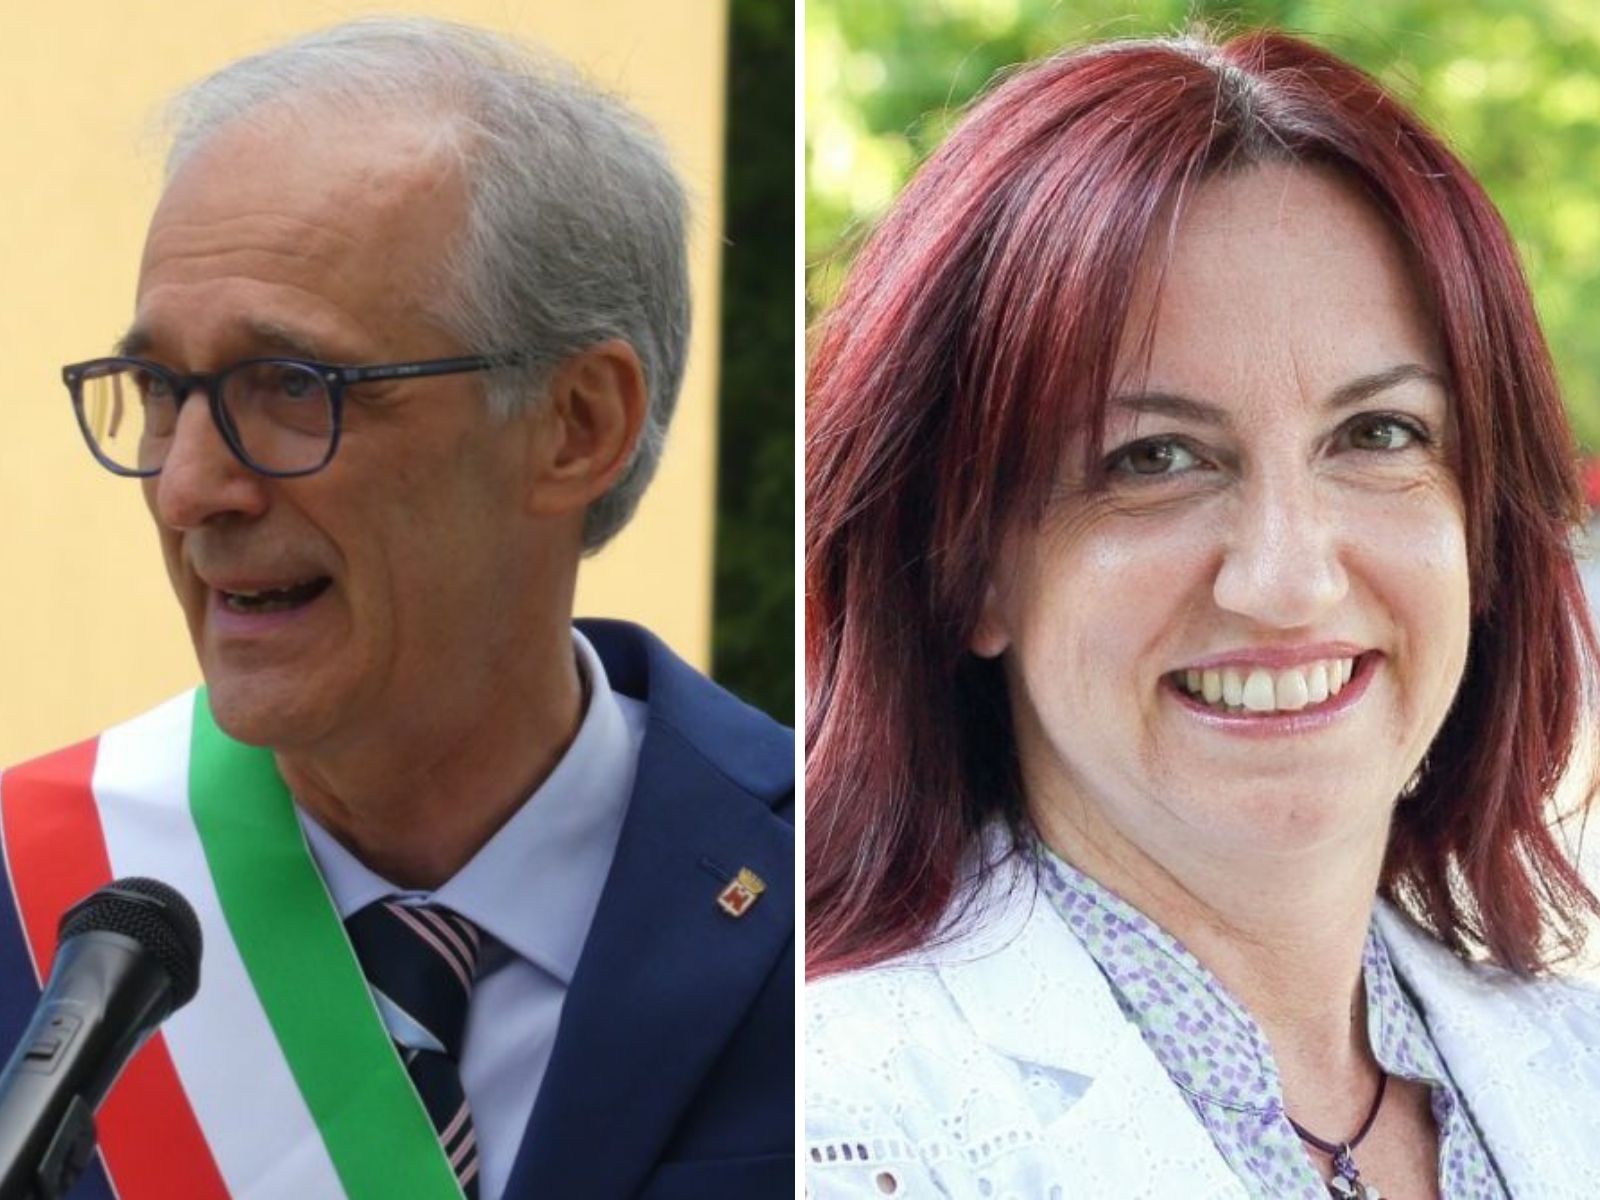 Airoldi revocato l’incarico di consigliere comunale alla Rigenerazione dell’ex Isotta Fraschini